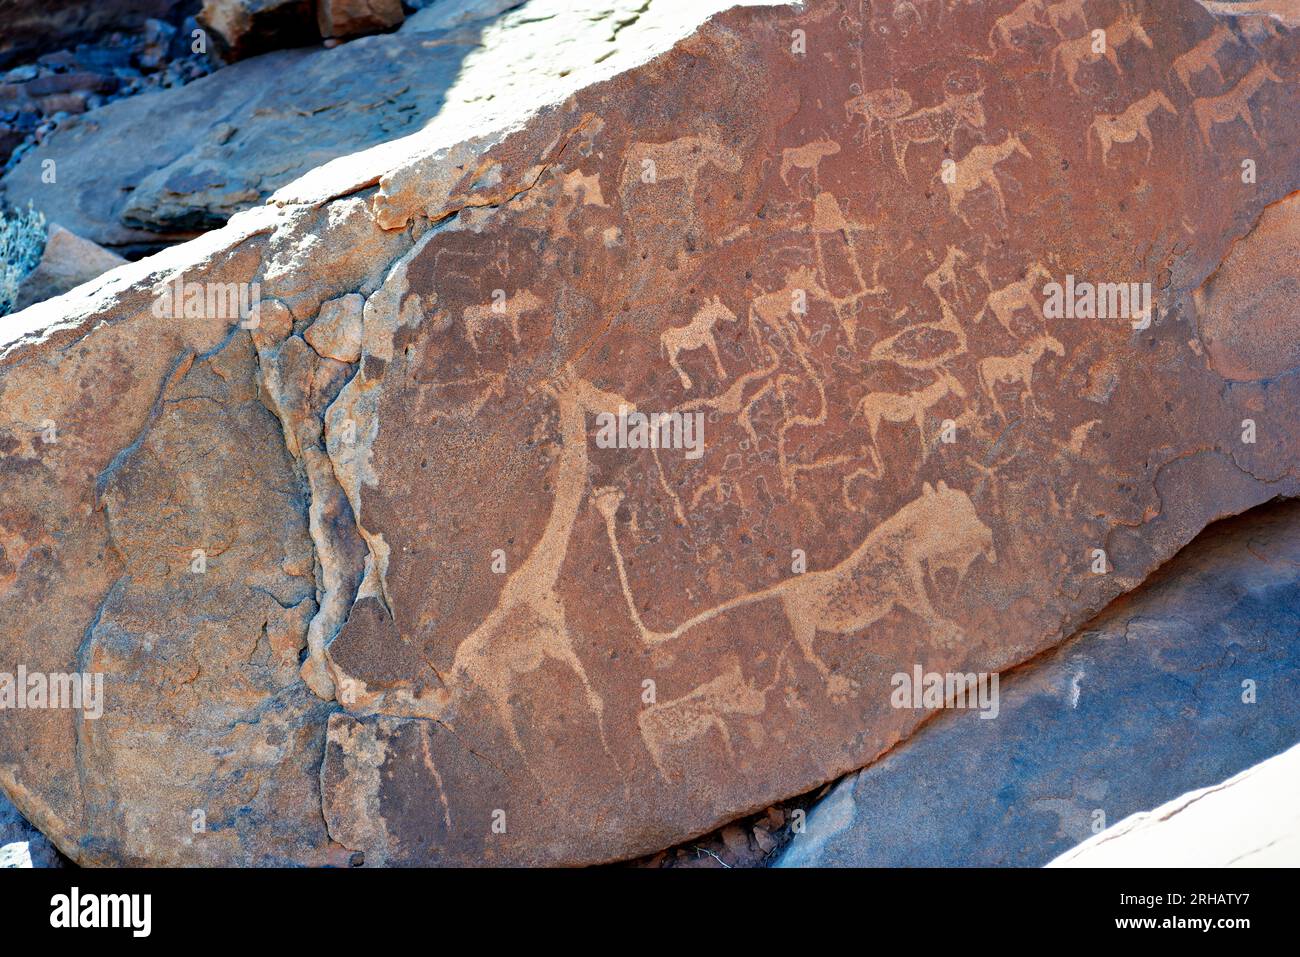 Namibia. Incisione rupestre preistorica nel sito archeologico di Twyfelfontein, regione di Kunene Foto Stock